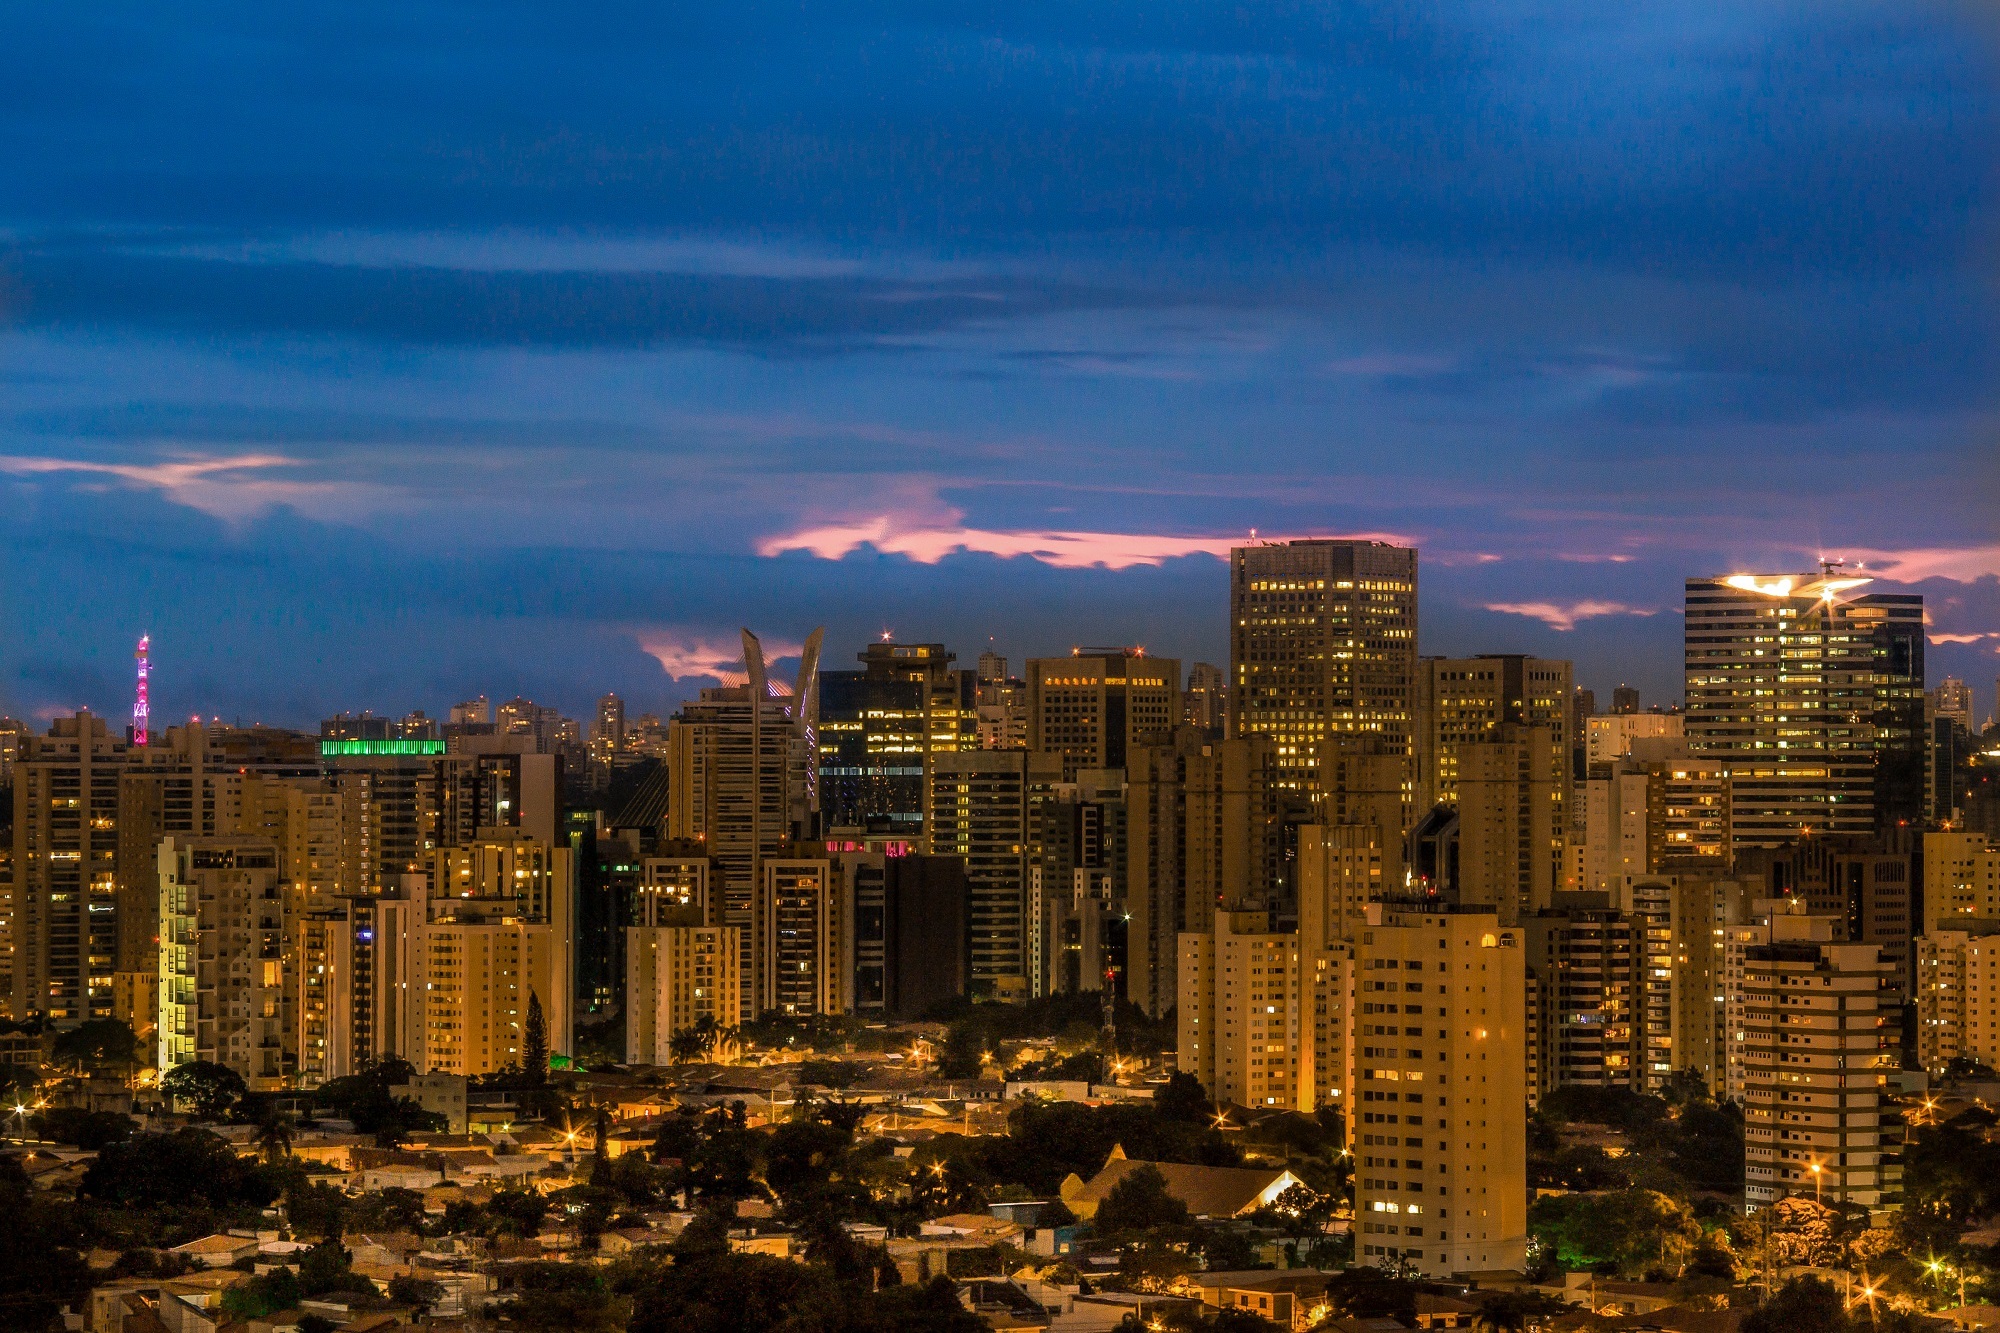 Sao Paulo, Architecture, Brazil, Building, City, HQ Photo